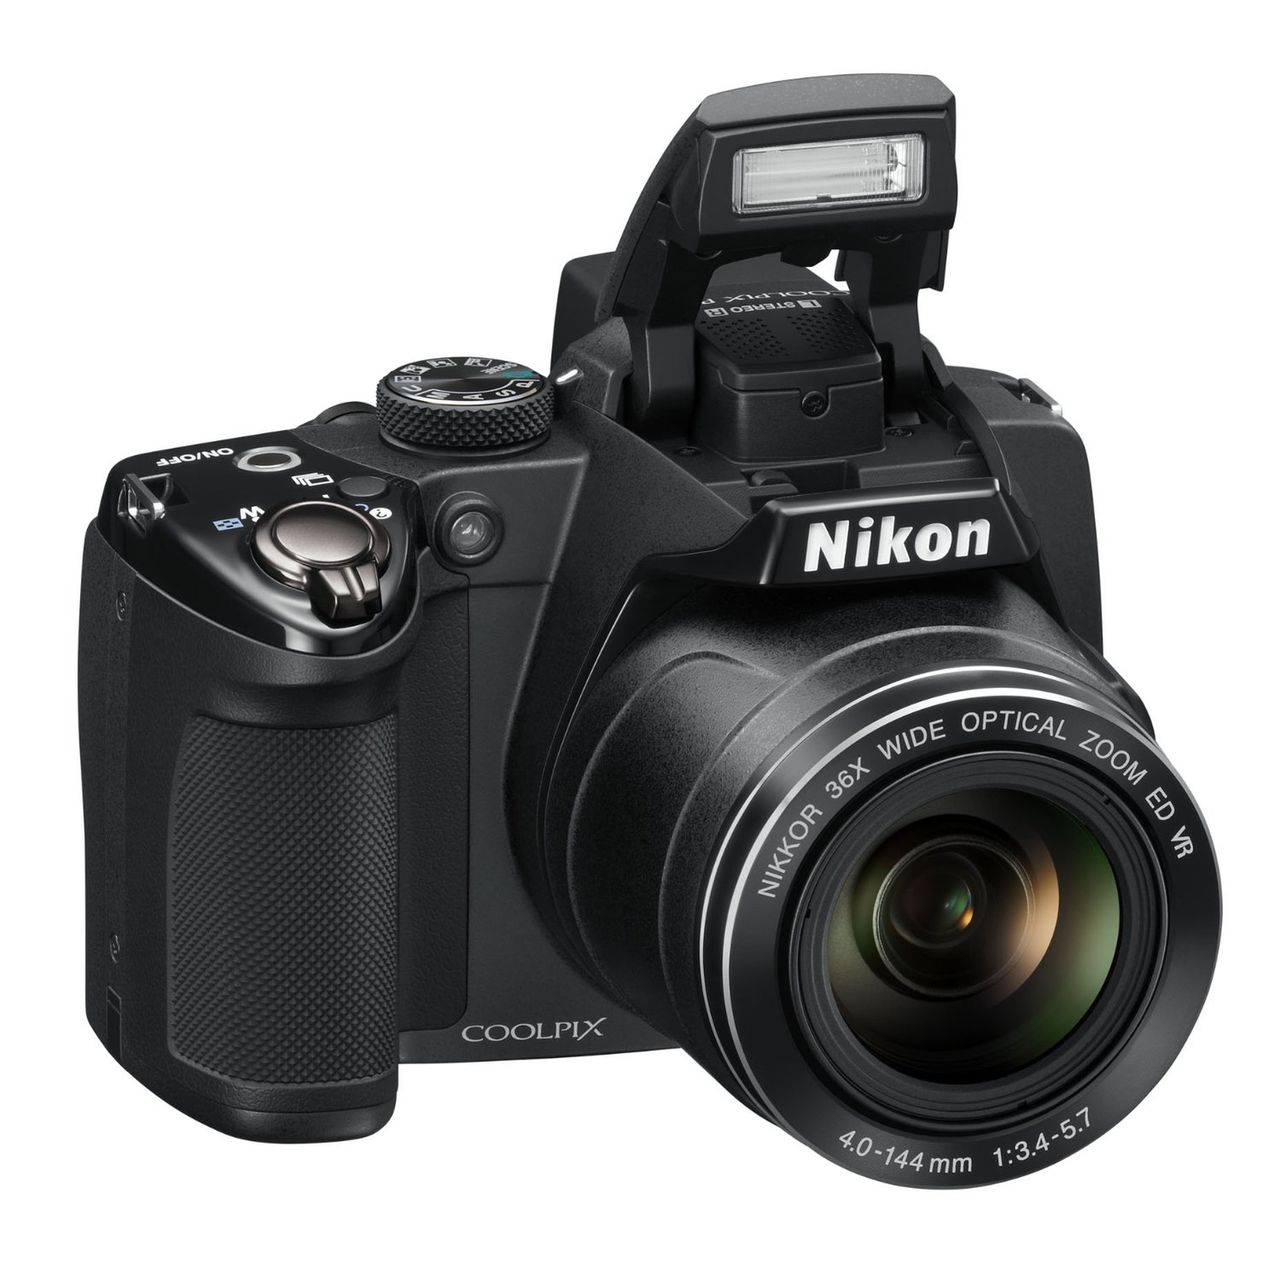 Nikon Coolpix P500 ma odchylany wyświetlacz LCD z powłoką przeciwodblaskową